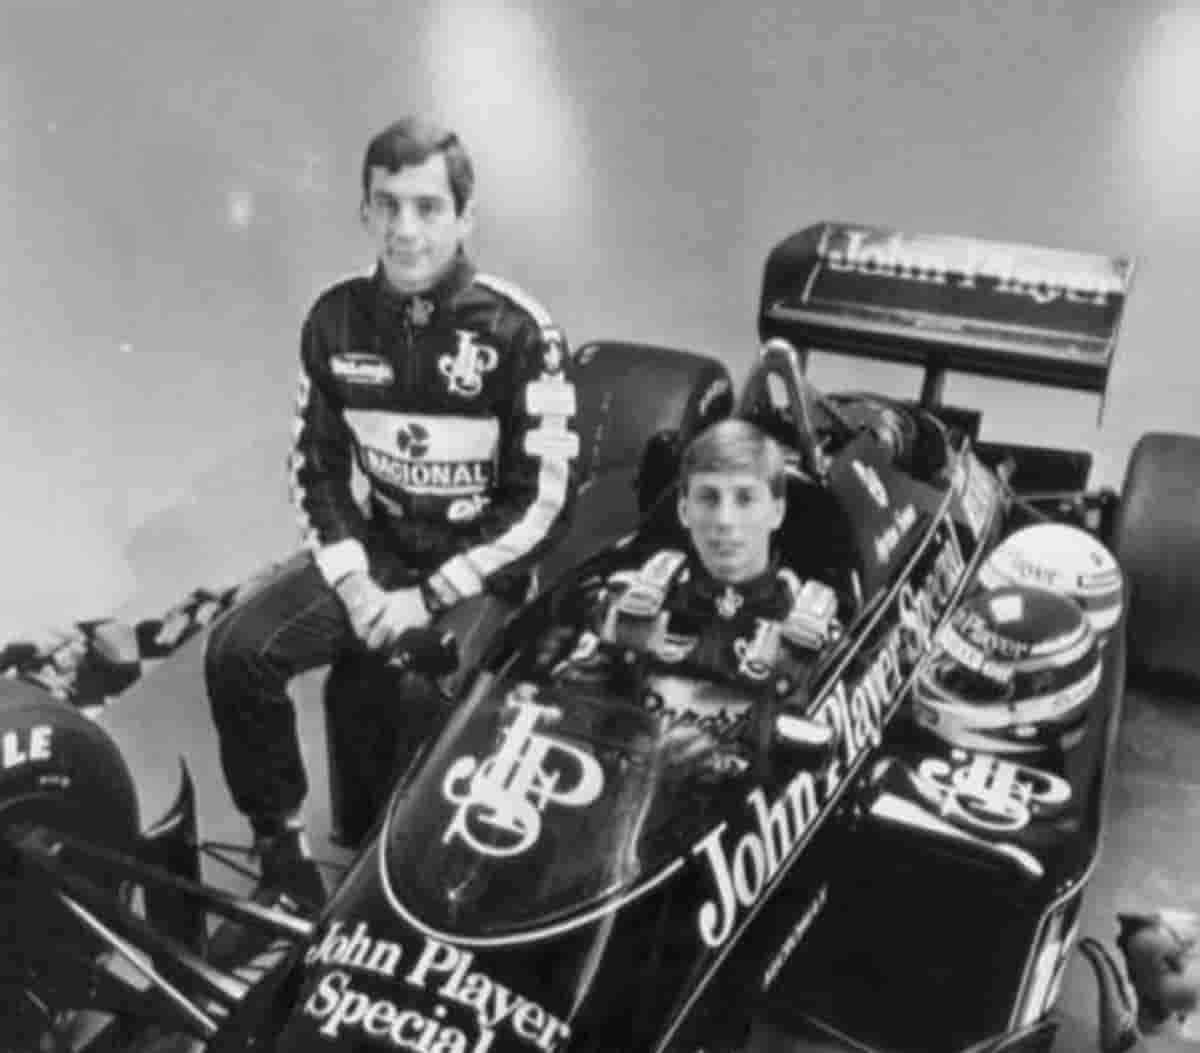 Johnny Dumfries è morto, l'ex pilota della Lotus aveva 62 anni. Fu compagno di squadra di Senna